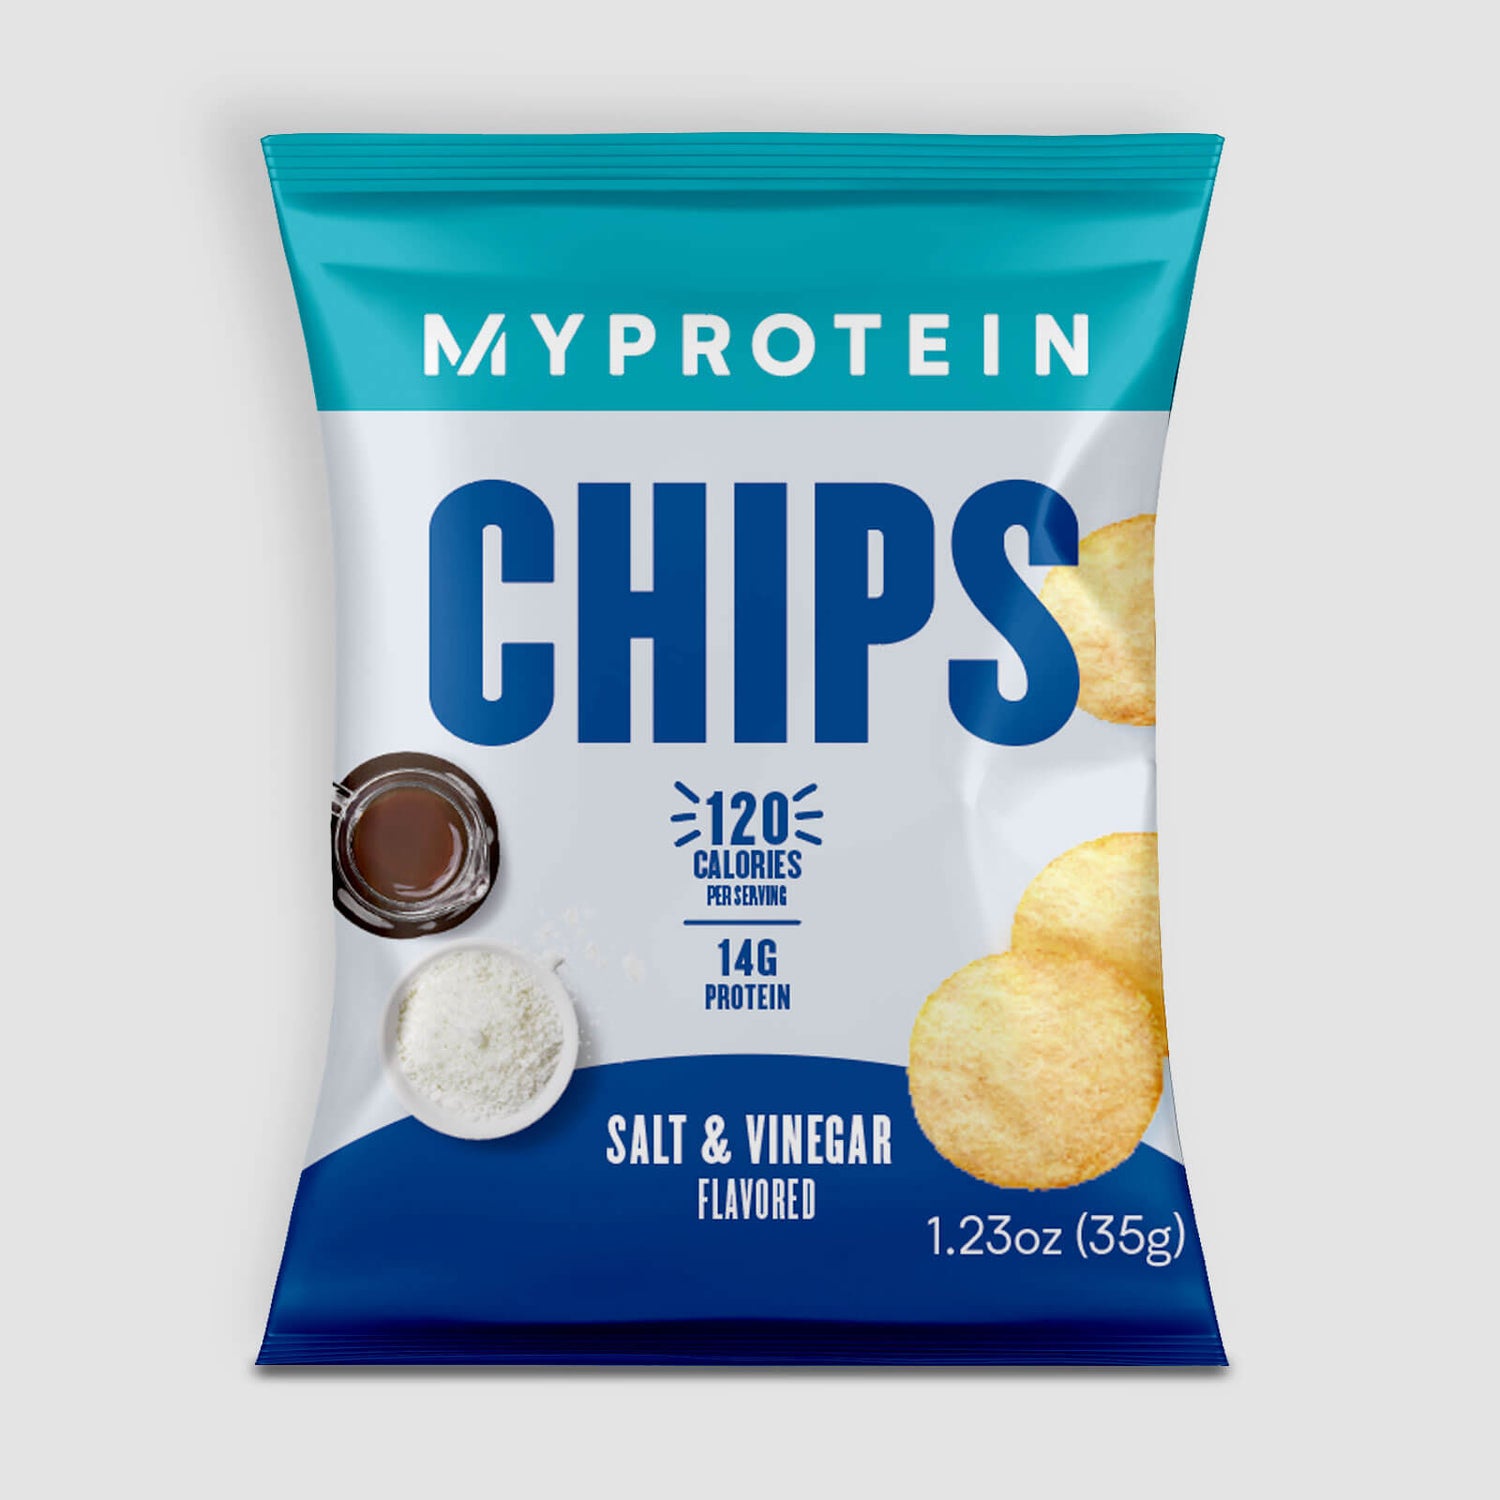 Myprotein Protein Crisps, 25g (USA) - 1servings - Salt & Vinegar